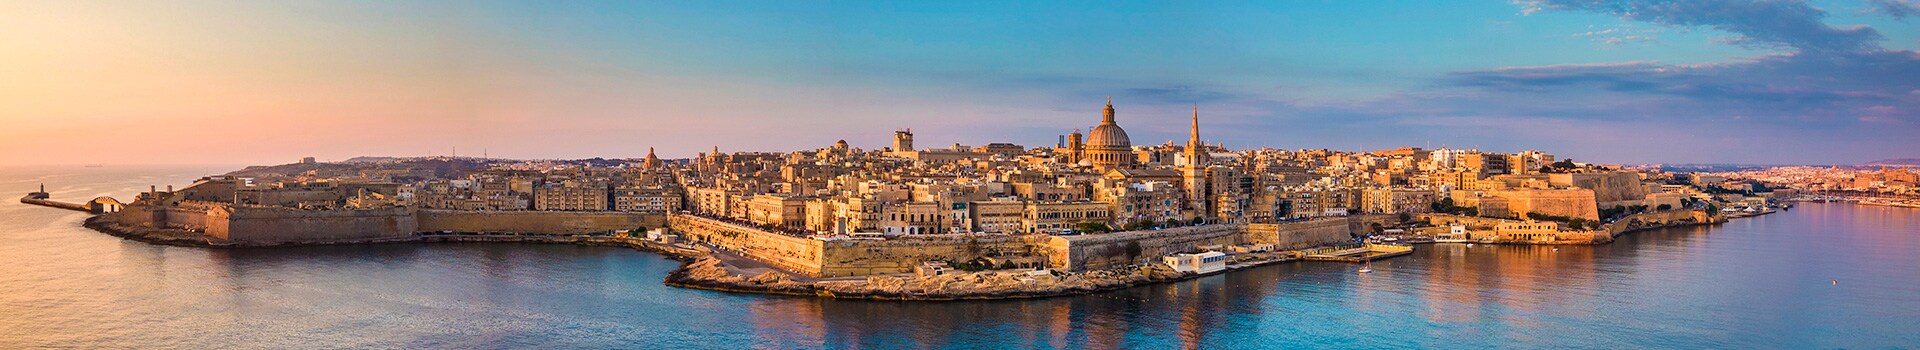 Loiu - Malta